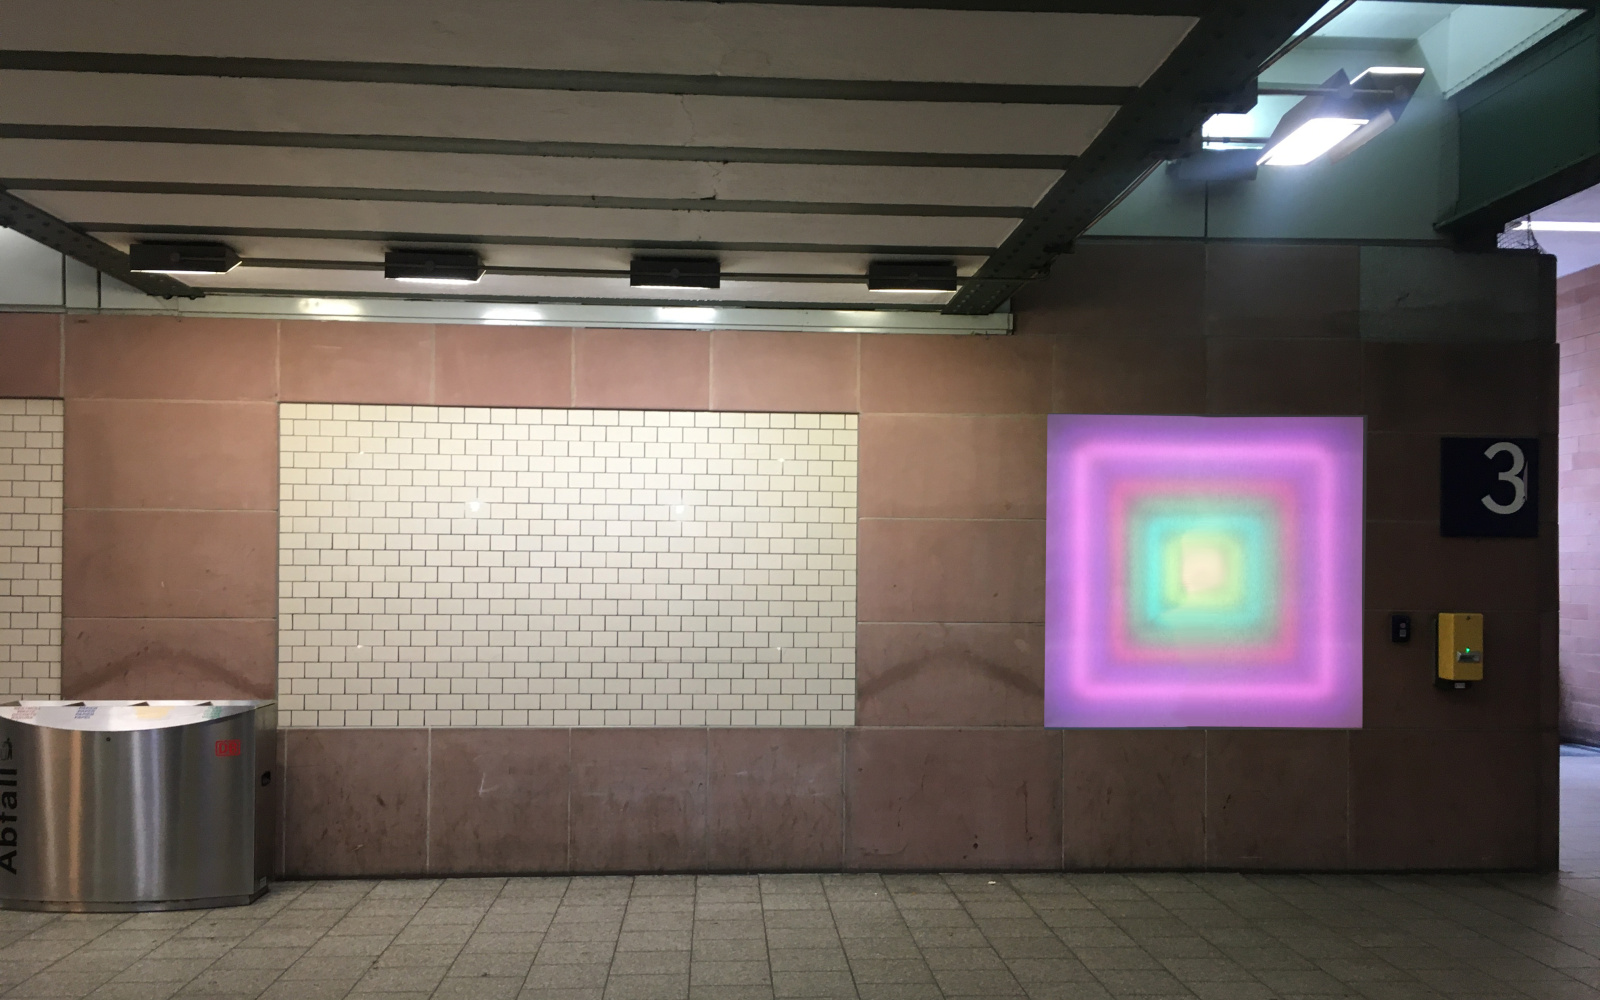 Zu sehen ist der Durchgang unter dem Karlsruher Hauptbahnhof. An der Wand ist ein leuchtendes Quadrat angebracht, das von innen nach außen einen Farbverlauf hat, der eine Tiefe erzeugt.